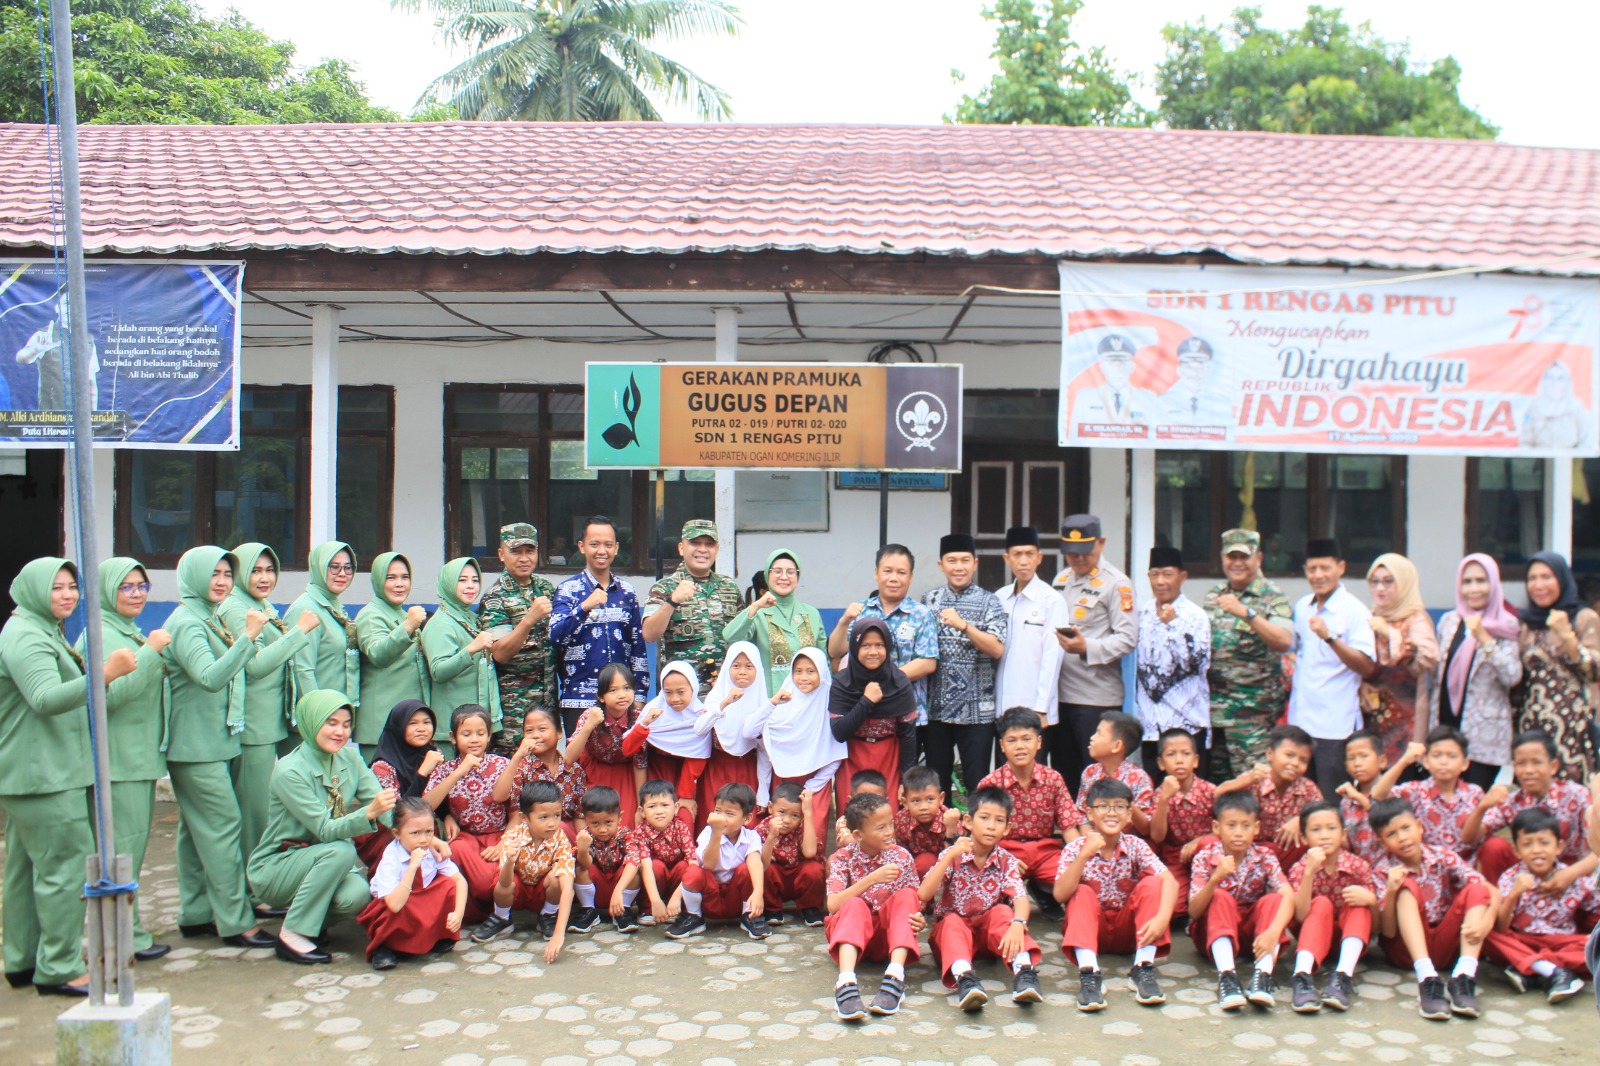 Program Unggulan Dapur Masuk Sekolah Kembali Dilanjutkan, Kunjungi SD Negeri 1 Rengas Pitu SP Padang OKI